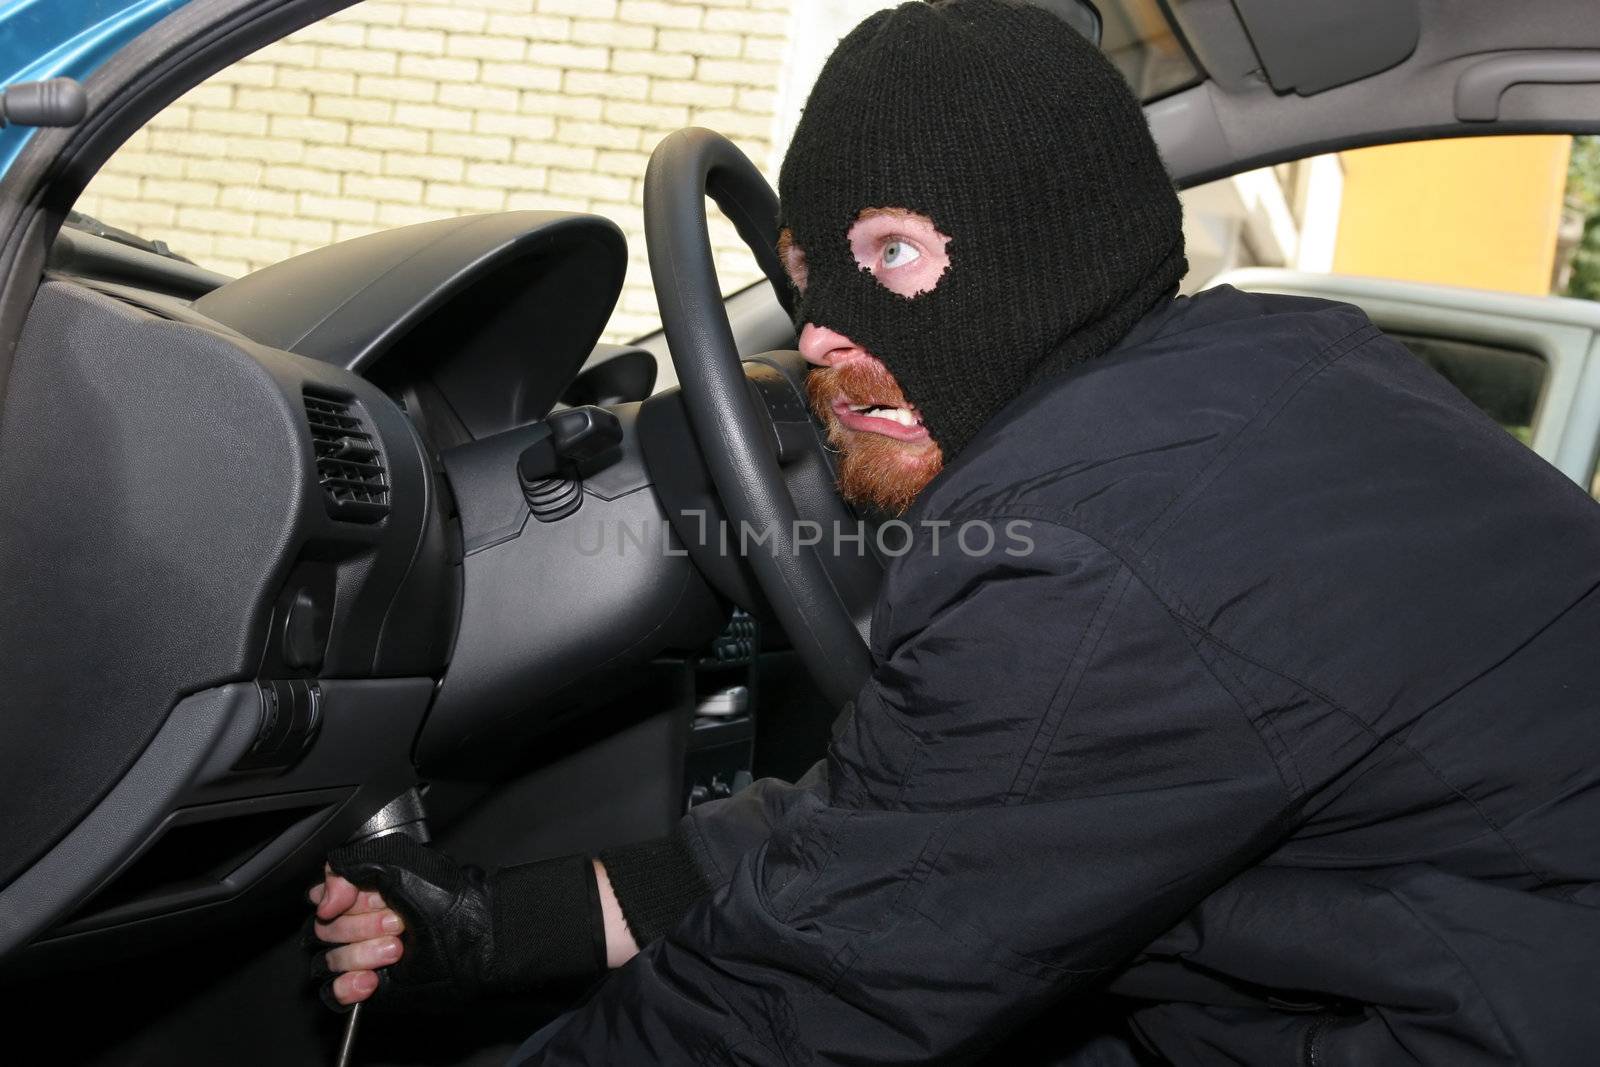 burglar wearing a mask (balaclava), details car burglary inside